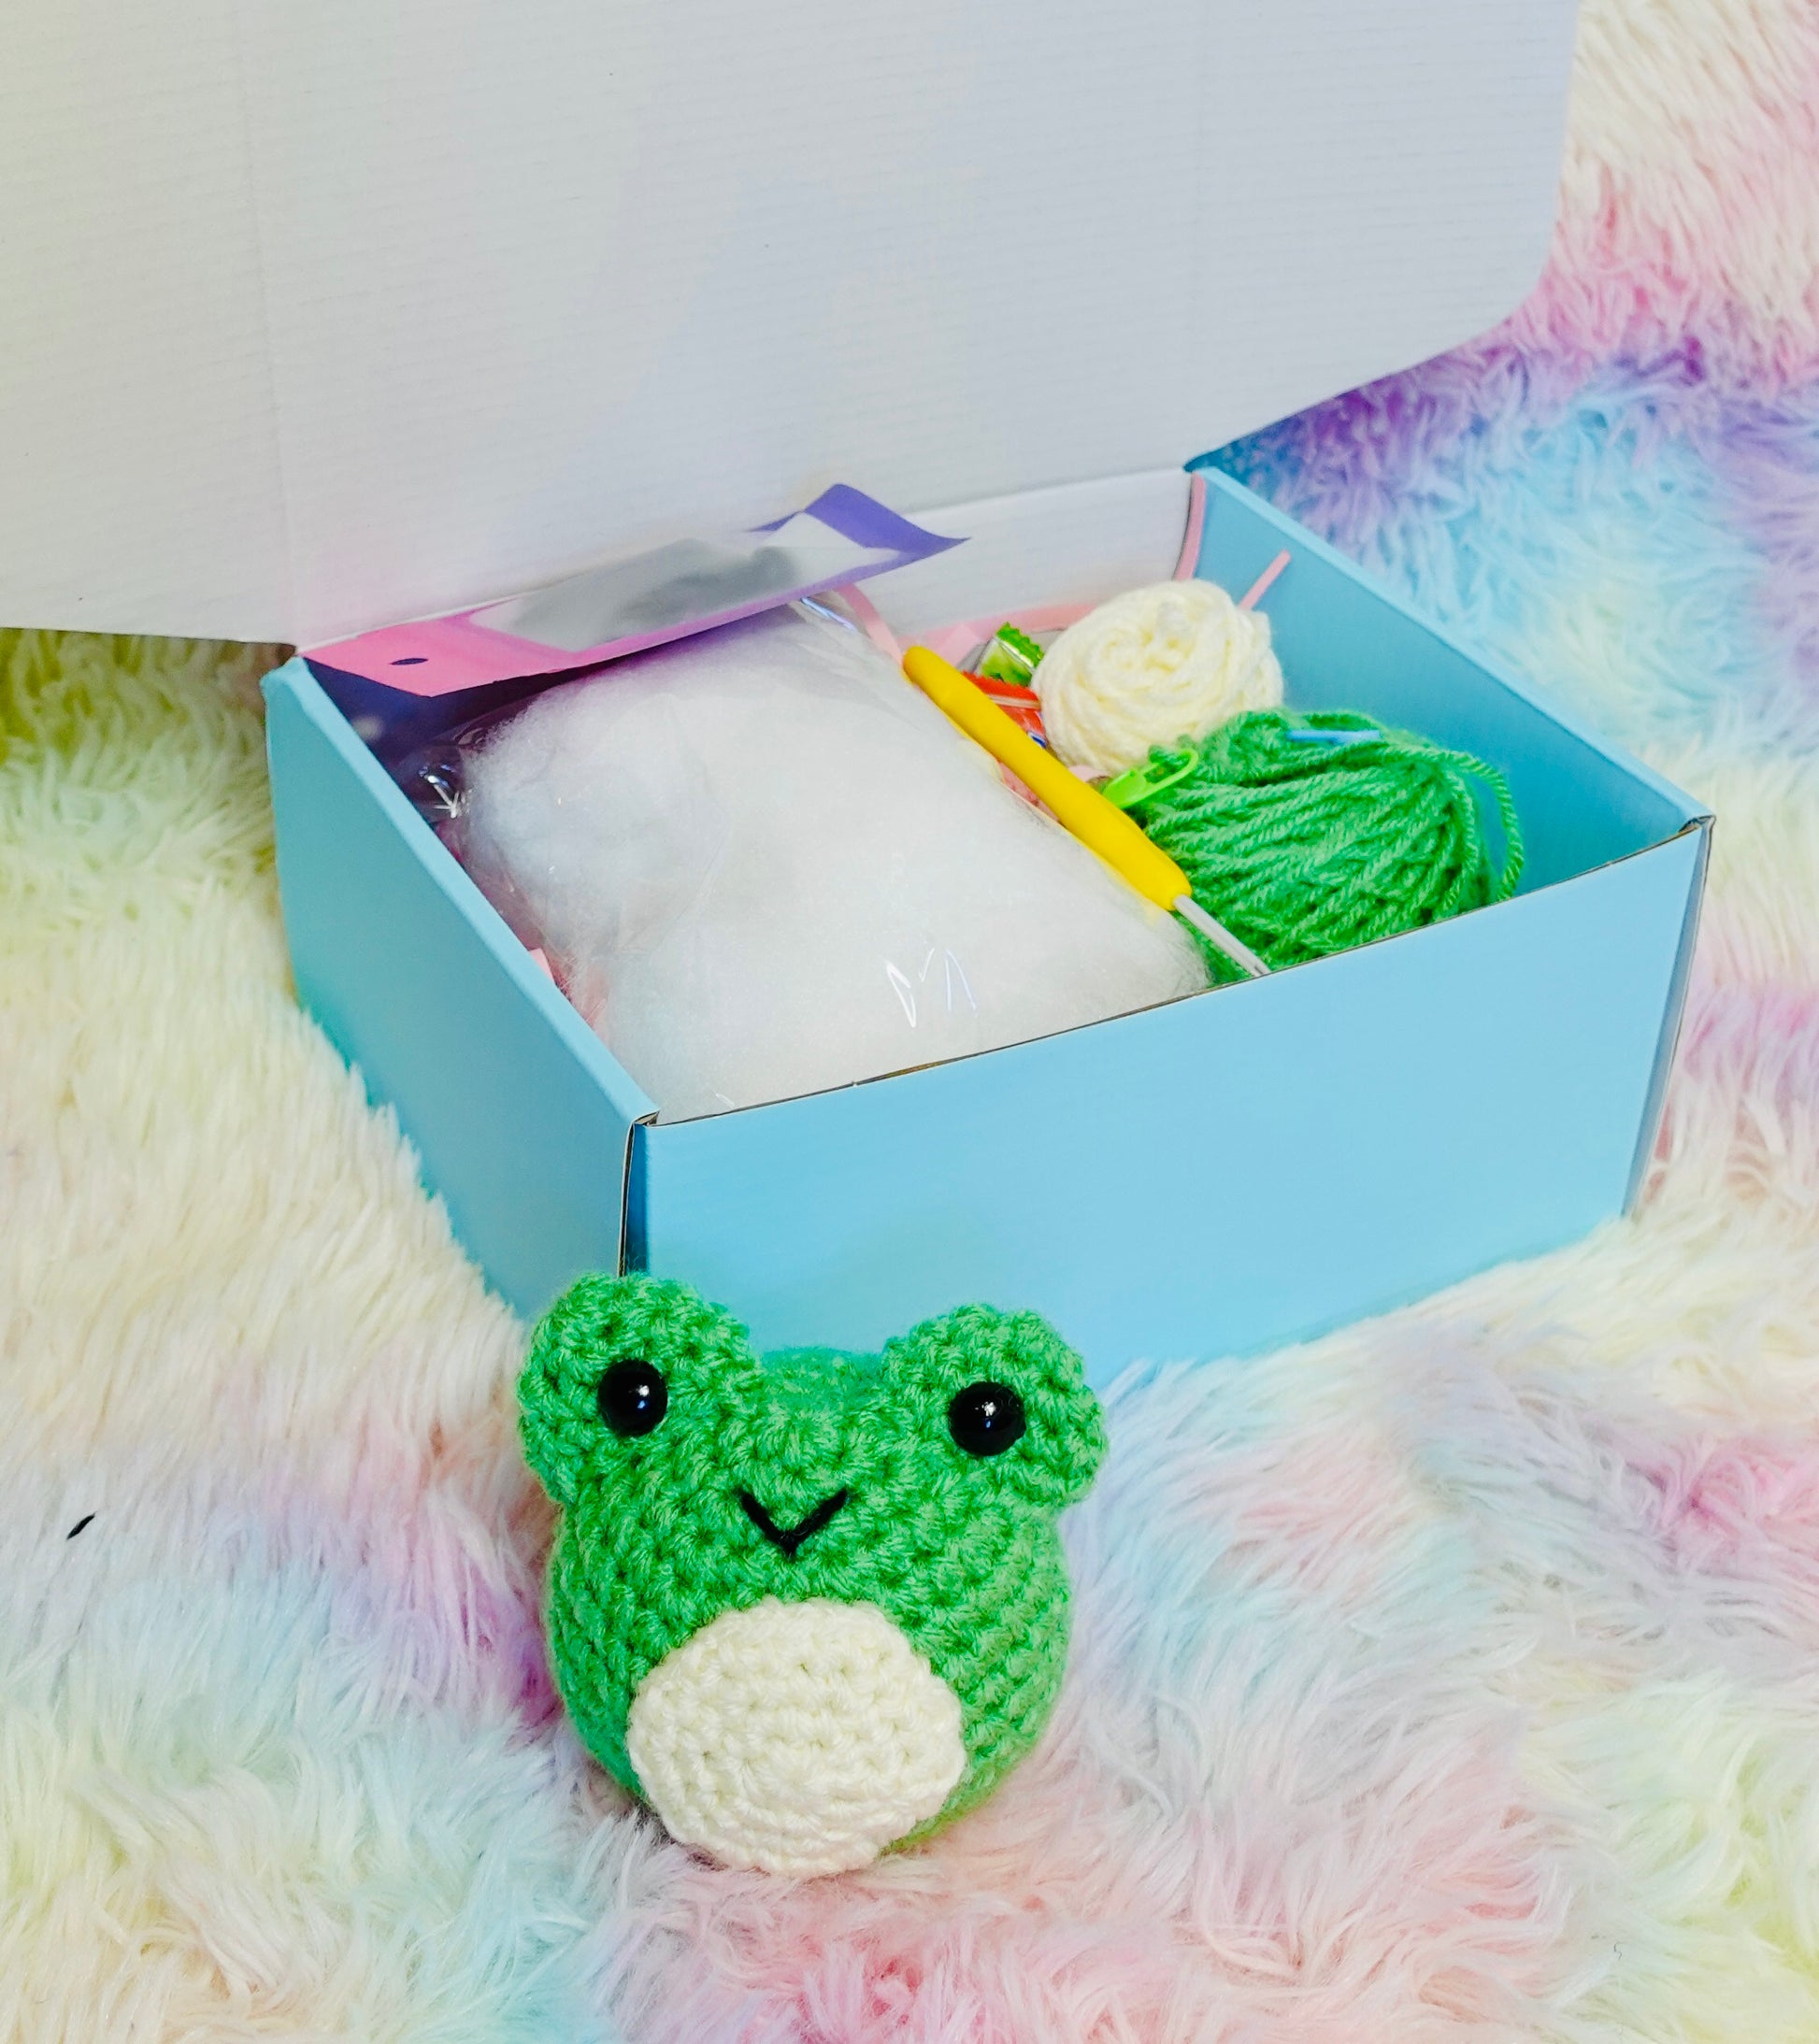 Frog crochet kit